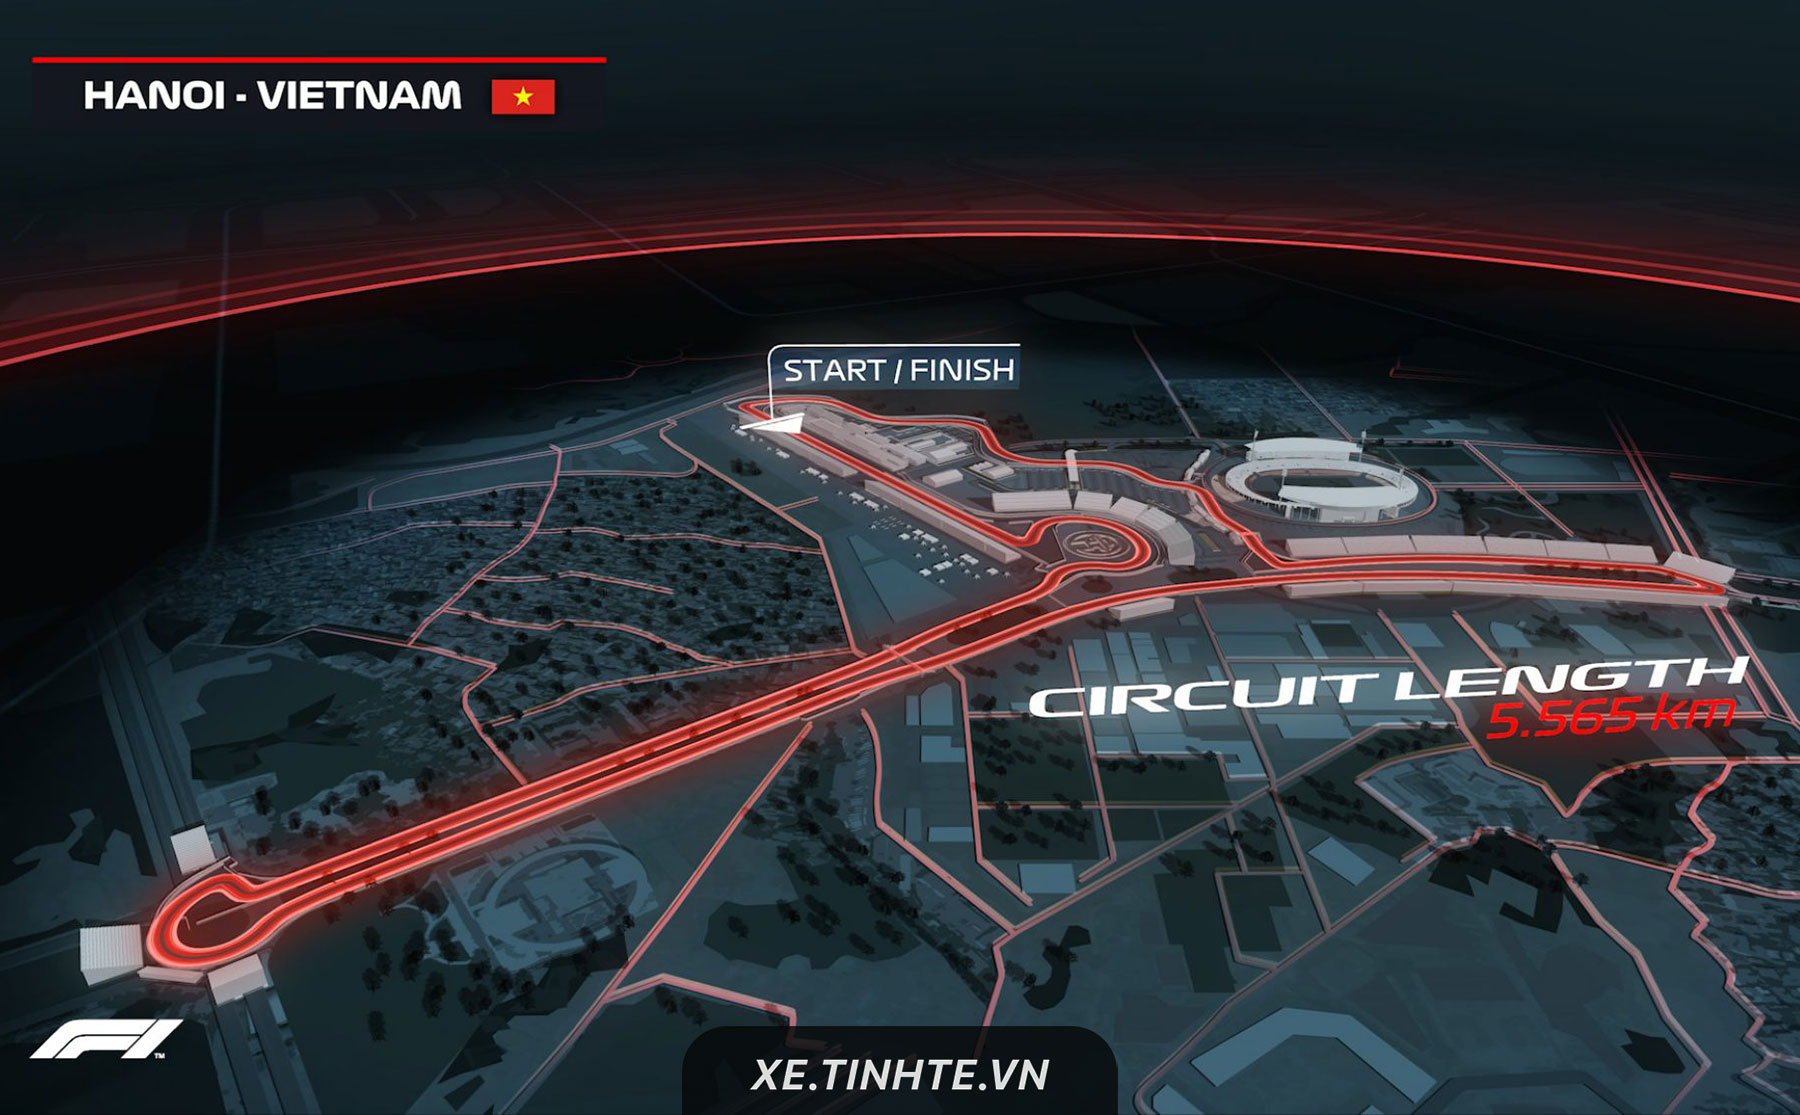 [Chính thức] Giải đua F1 sẽ được tổ chức tại Hà Nội vào năm 2020, đường đua dài 5,5 km